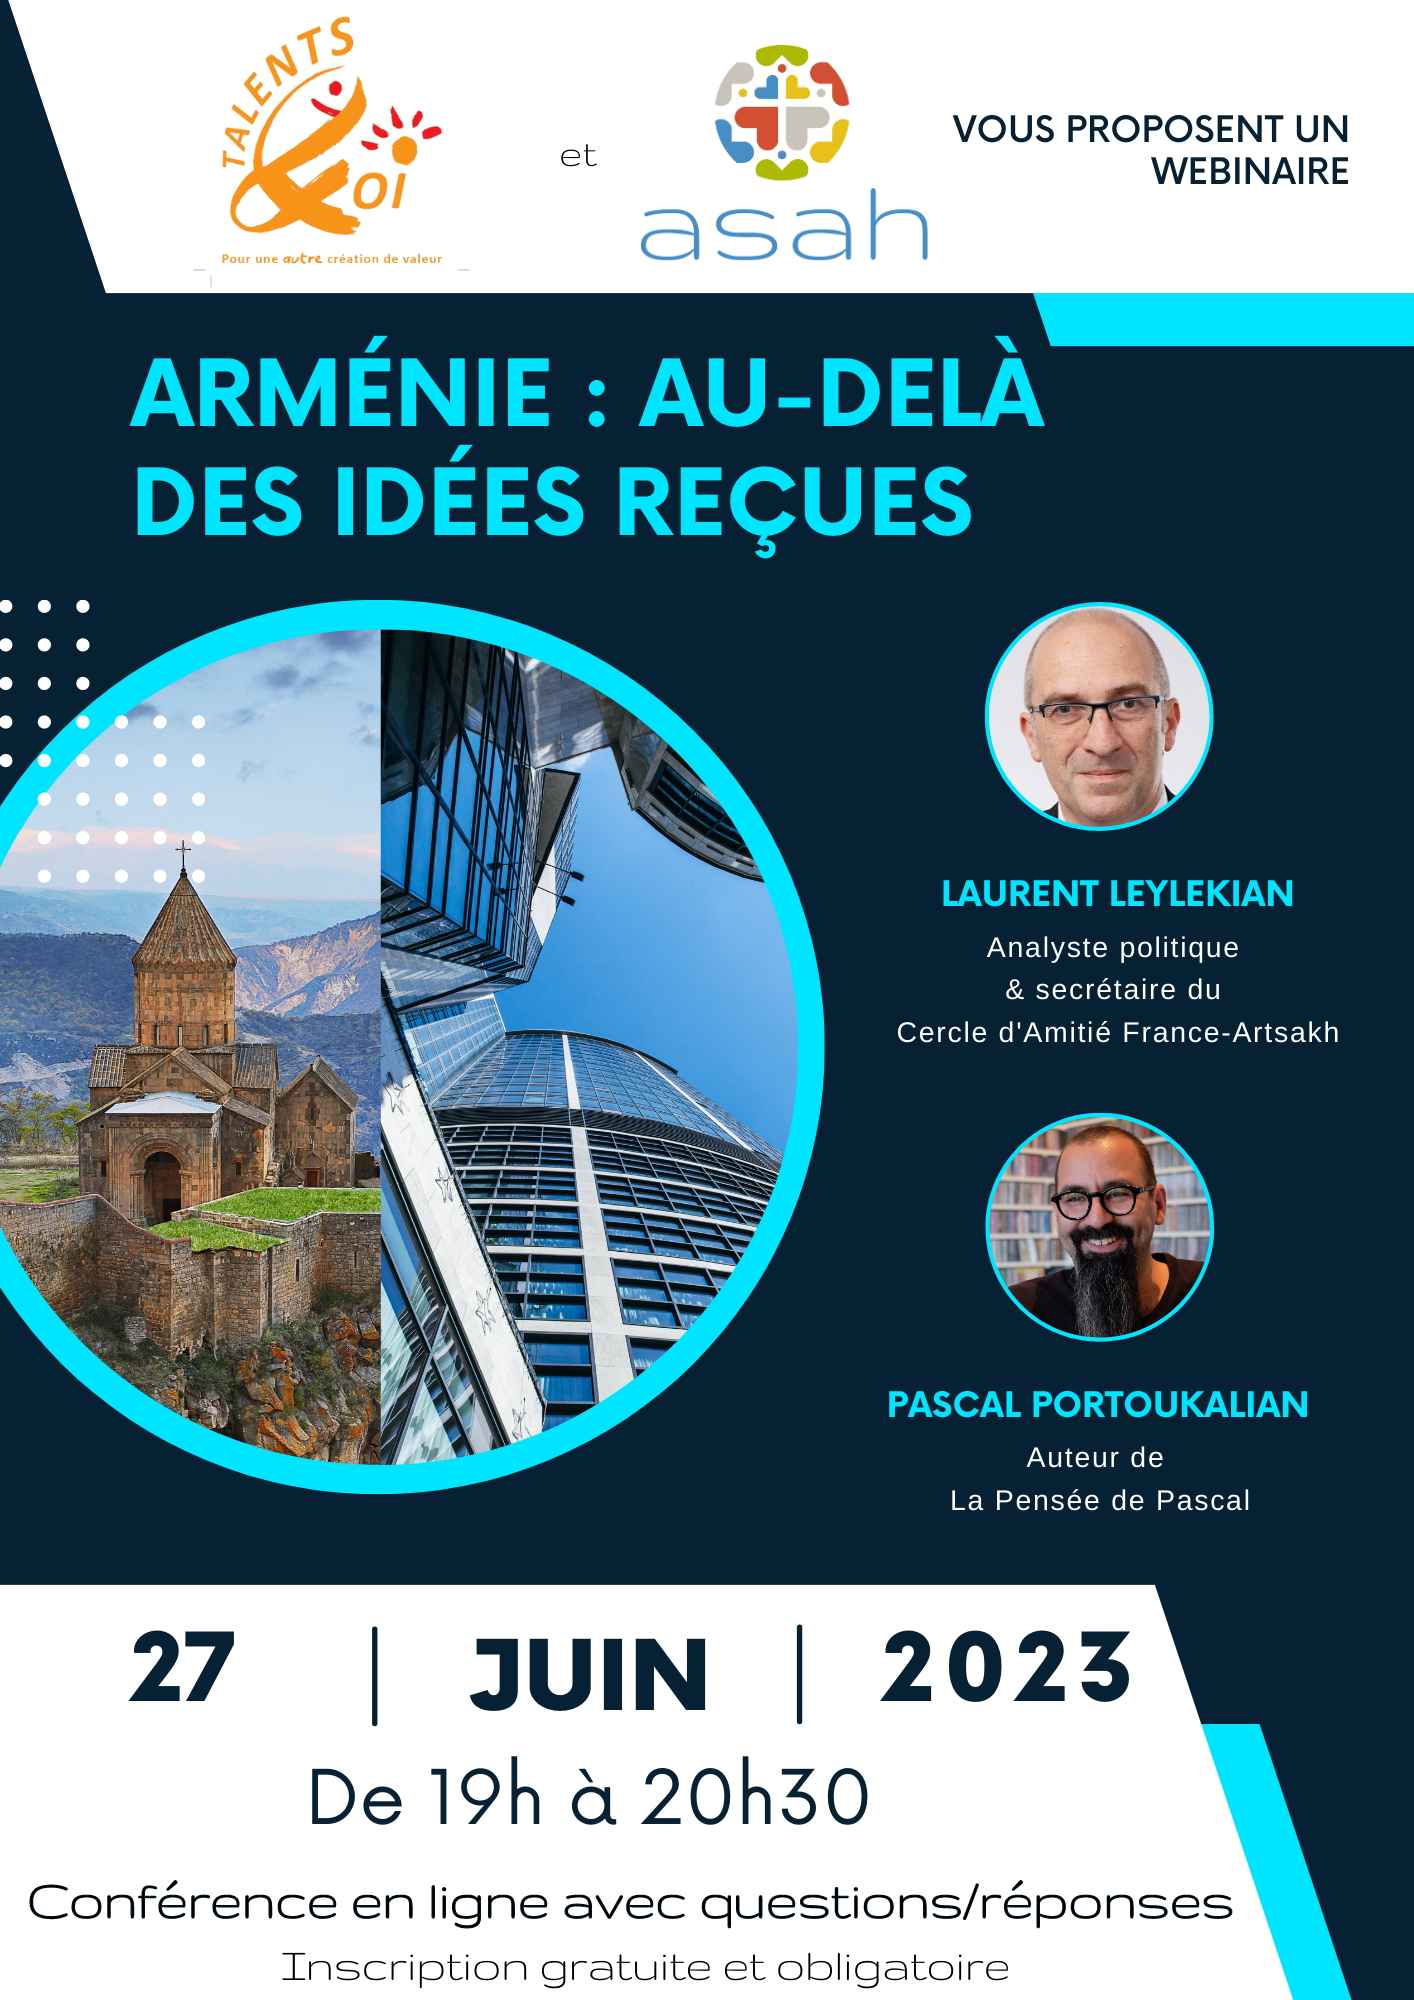 Einladung zu einem Webinar: Armenien, jenseits empfangener Ideen